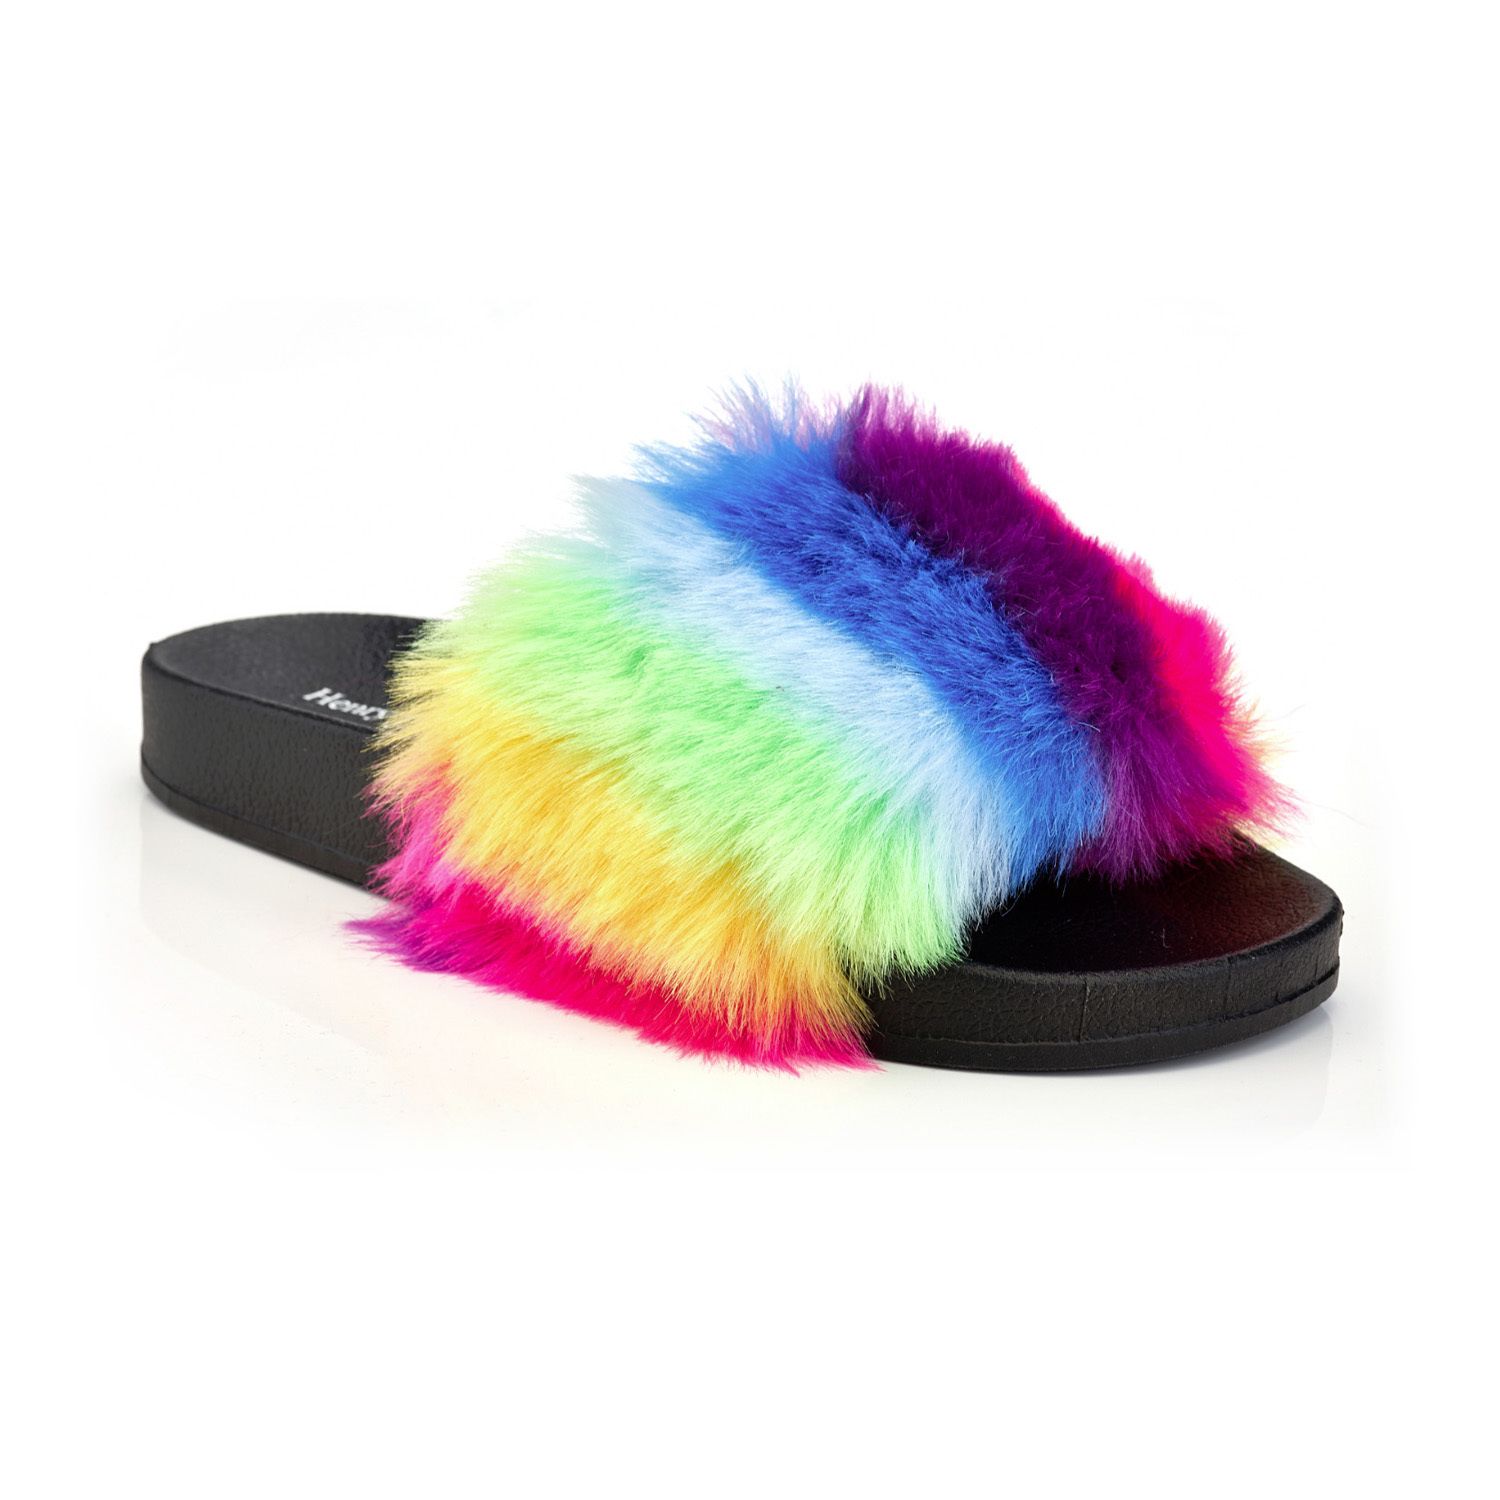 Image for Henry Ferrera Biba Women's Faux-Fur Slide Sandals at Kohl's.